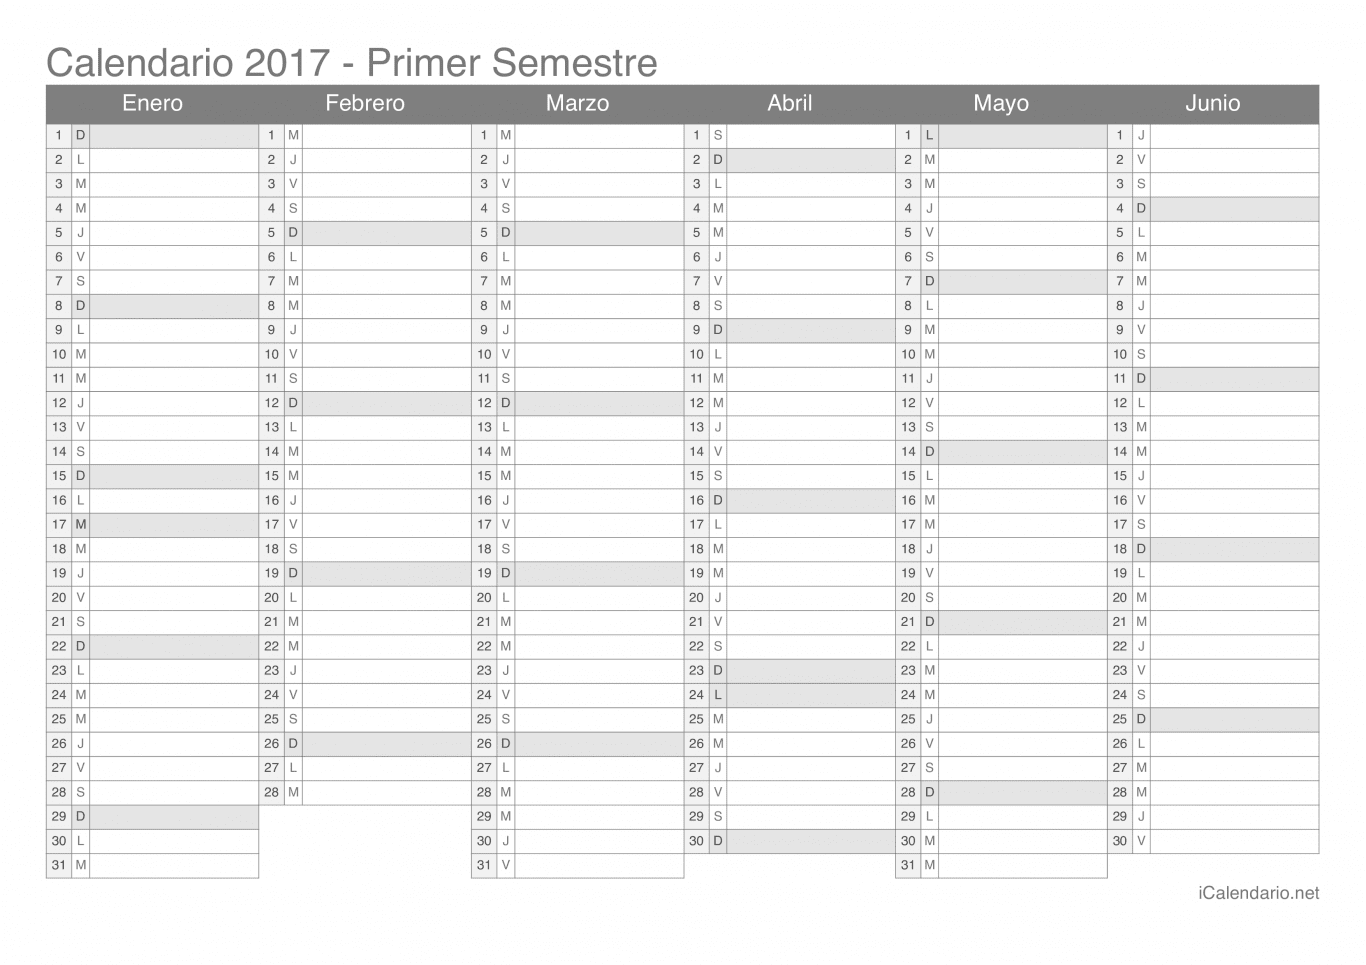 Calendario por semestre 2017